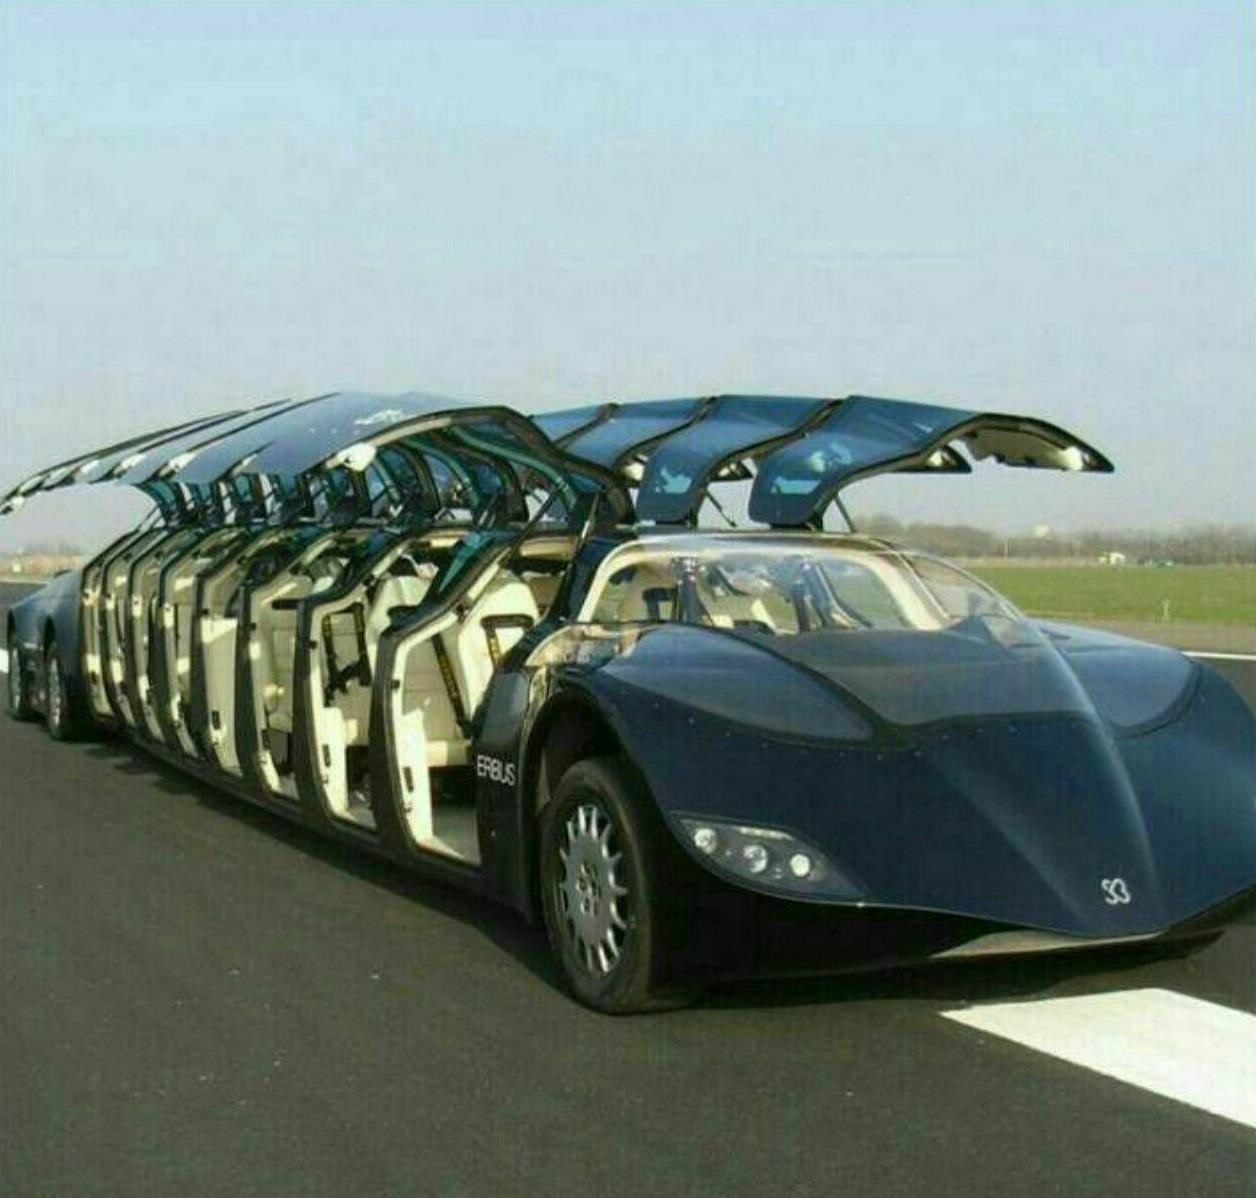 خودروی 10 میلیون دلاری به طول 15 متر و ظرقیت 23 نفر (+عکس)